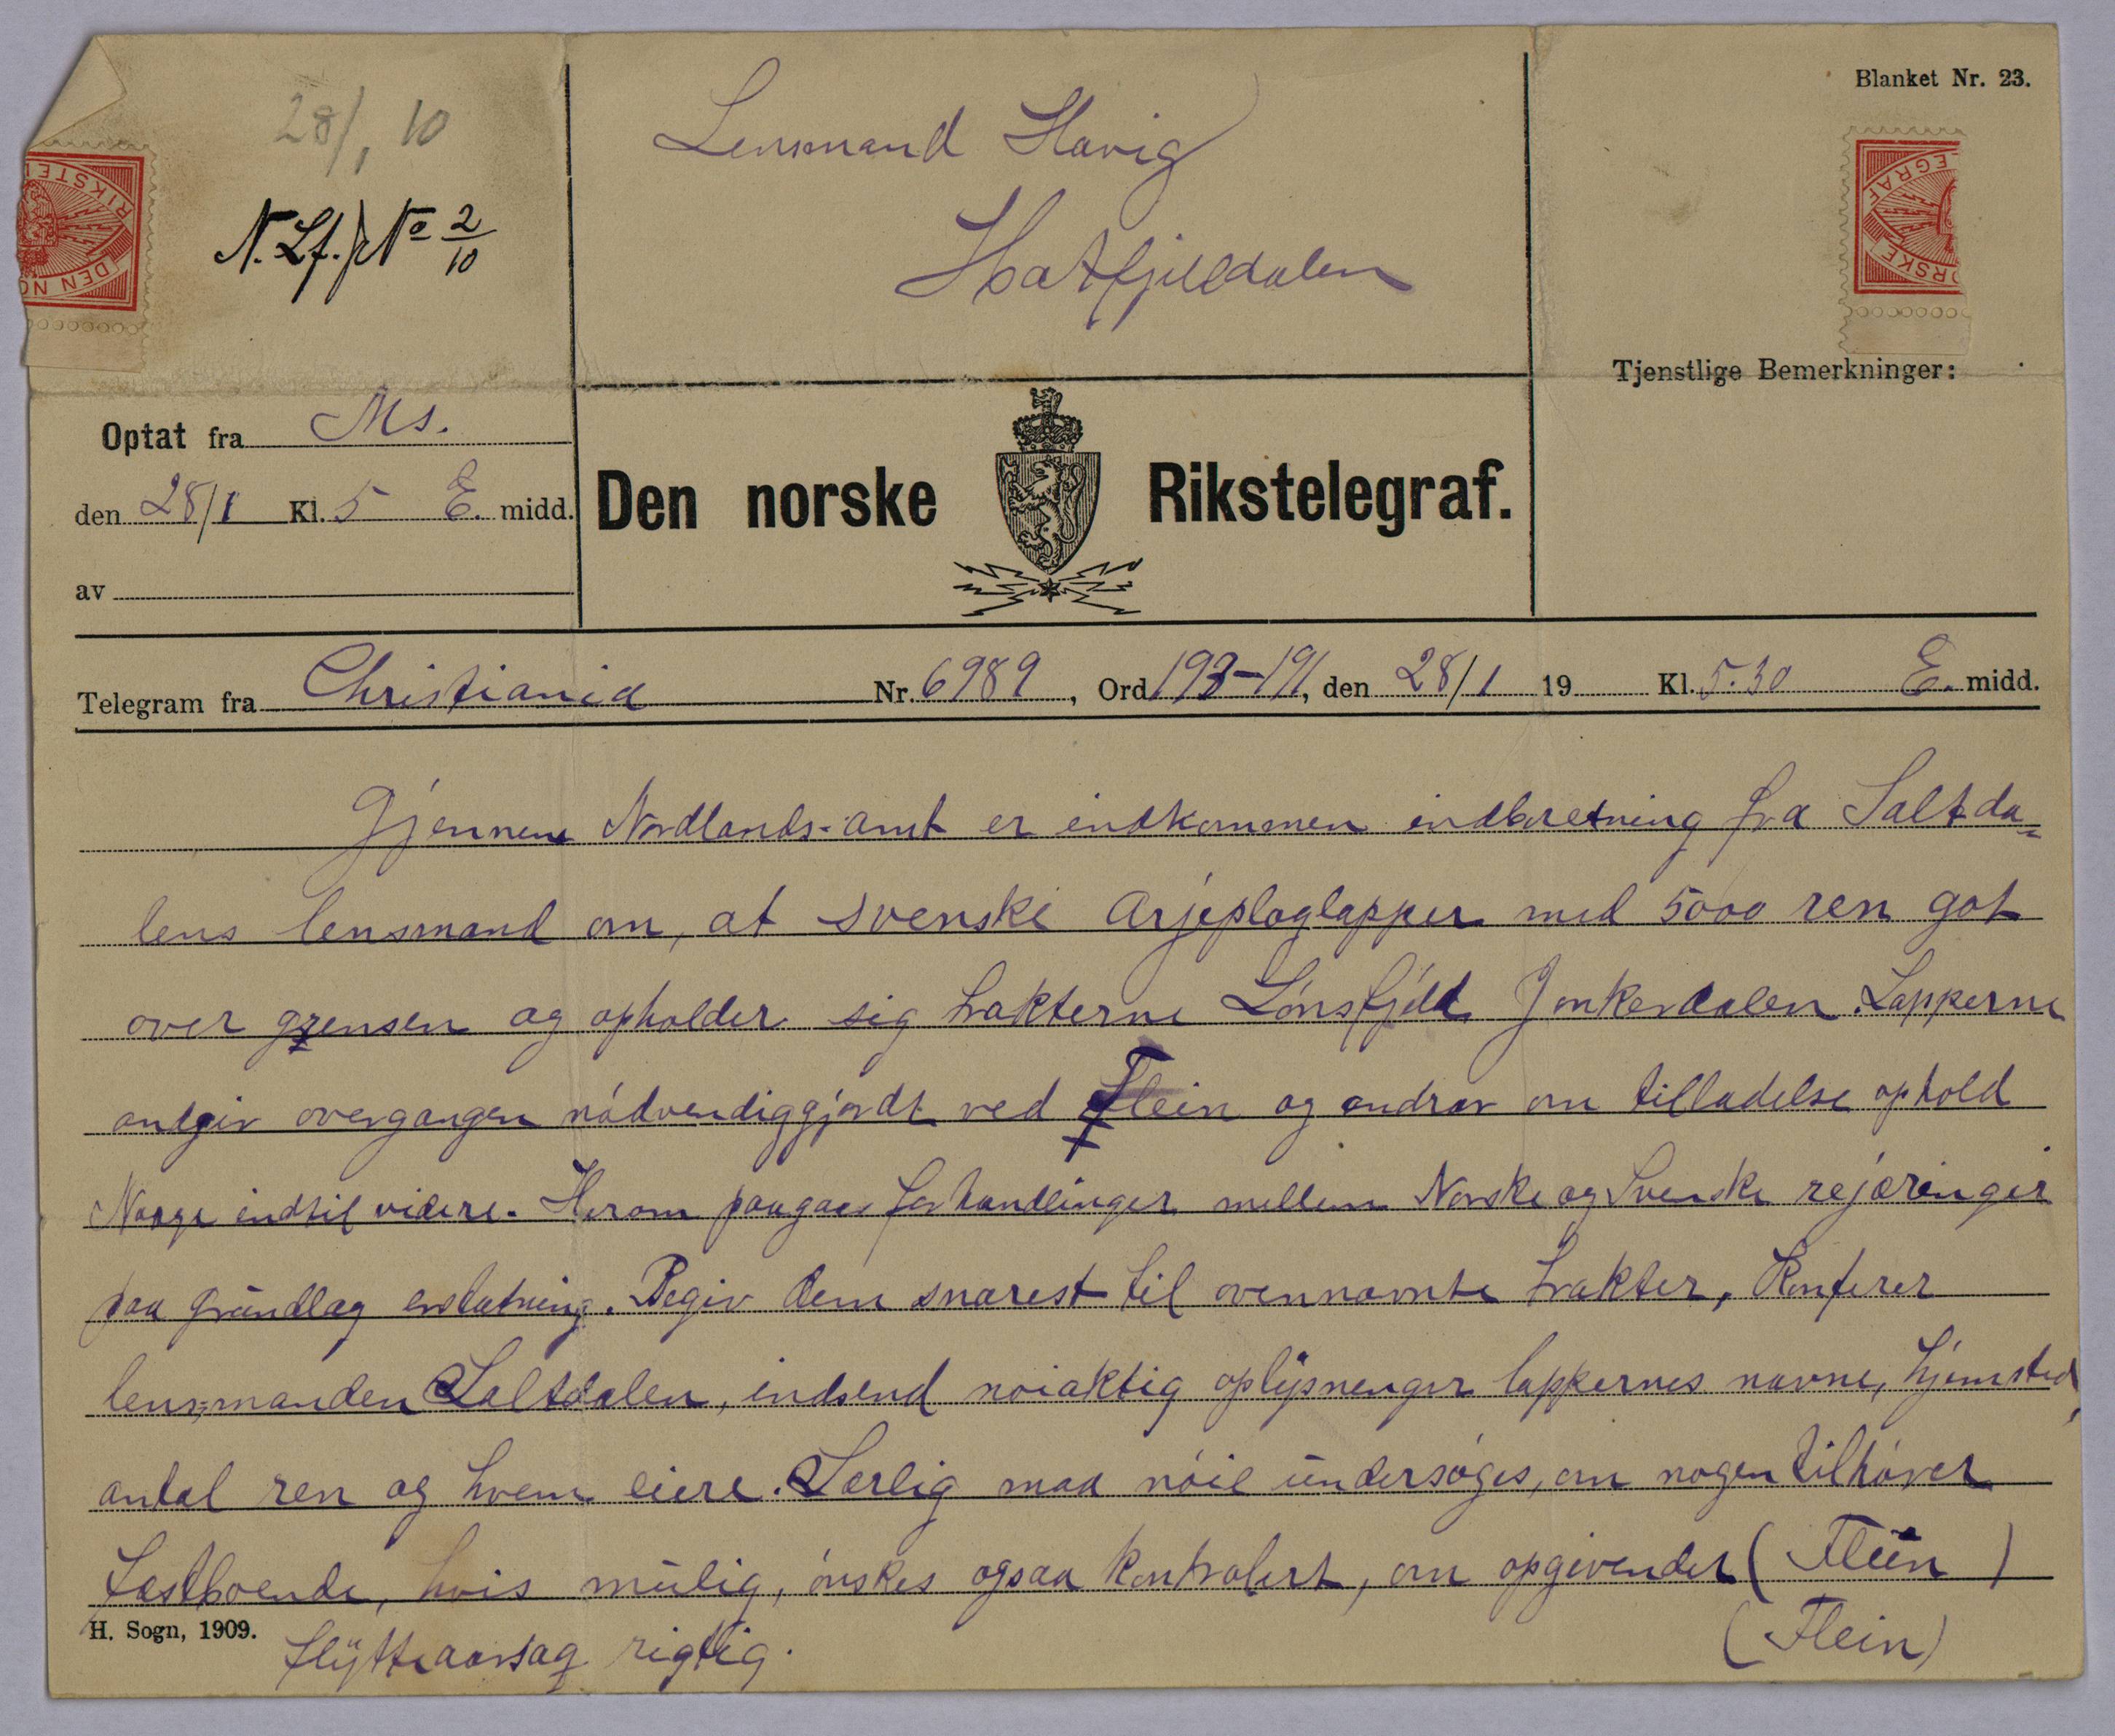 Telegrámma njukčamánu 1916:s ruoŧa bohccuid birra Norggas. Lulli-Trøndelága Fylkkamánni arkiivvas. Stáhtaarkiiva Troandimis.